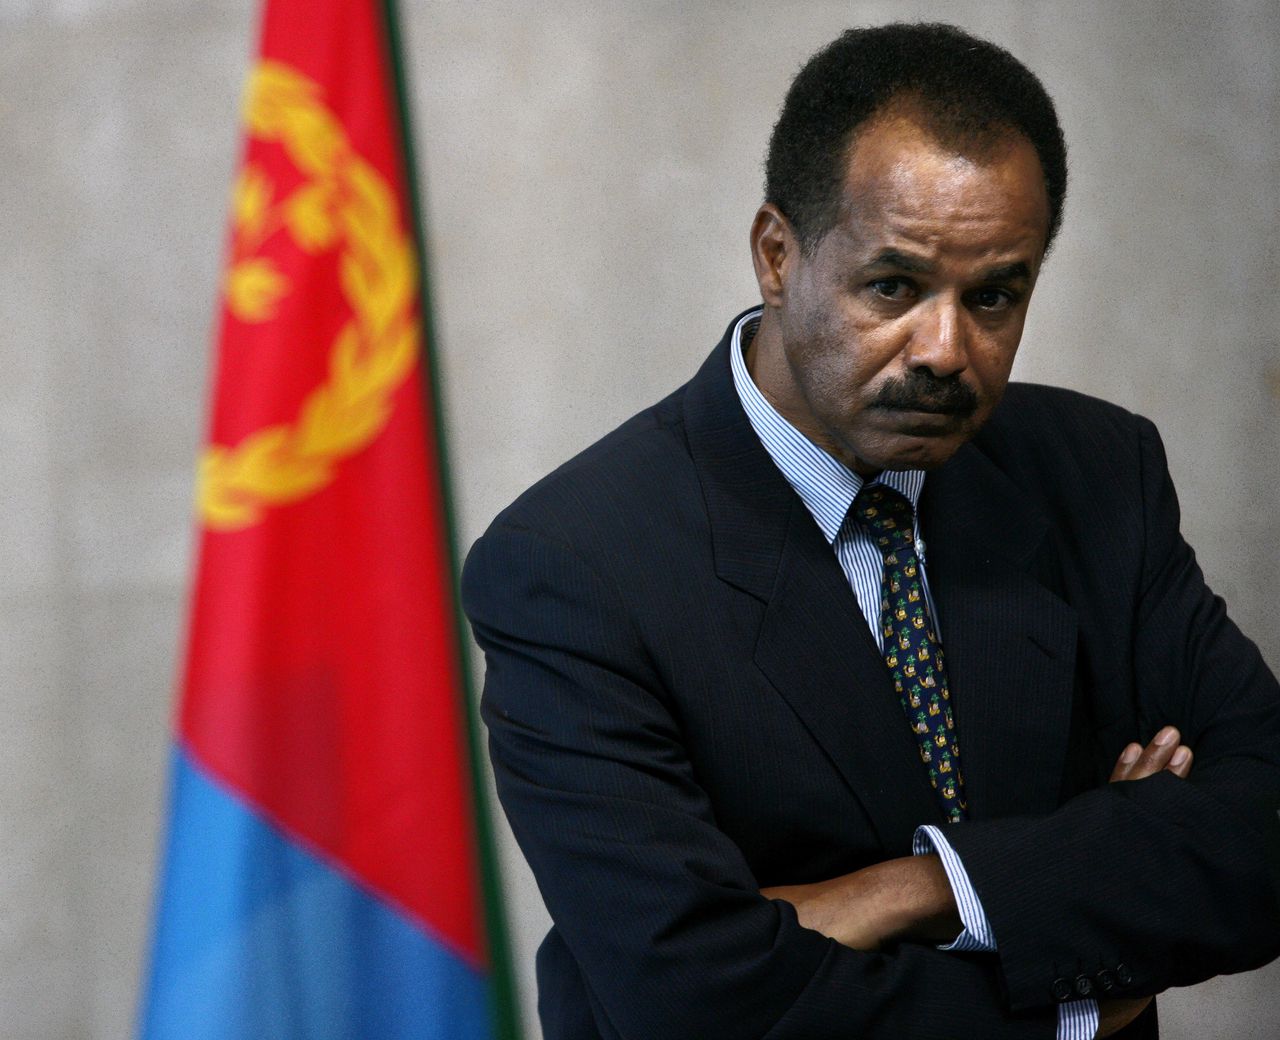 De Eritrese president Issayas Afewerki, in mei 2007 op een conferentie met de EU in Brussel. Afewerki is president sinds de onafhankelijkheid van Eritrea in 1993.